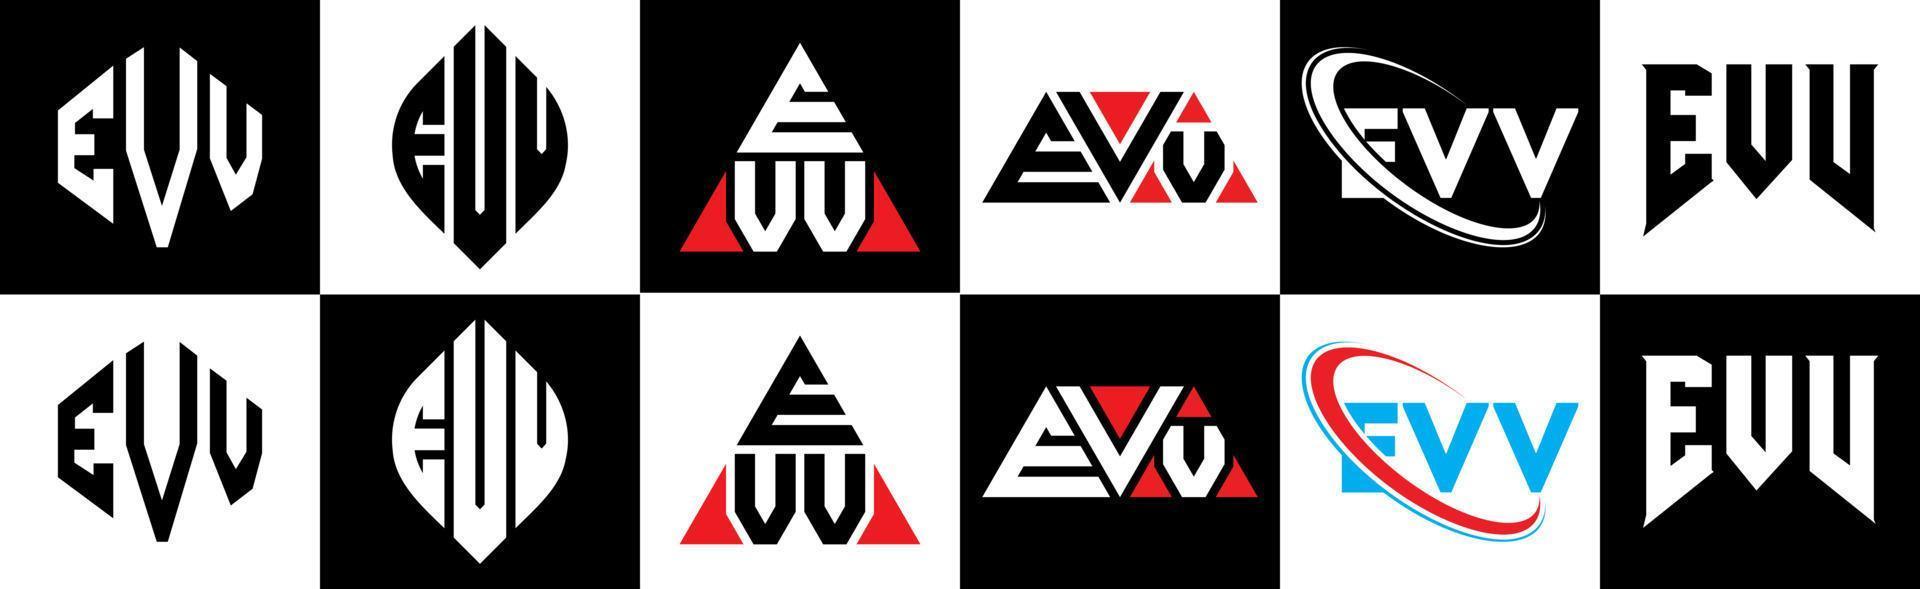 evv-Buchstaben-Logo-Design in sechs Stilen. evv polygon, kreis, dreieck, sechseck, flach und einfacher stil mit schwarz-weißem buchstabenlogo in einer zeichenfläche. evv minimalistisches und klassisches Logo vektor